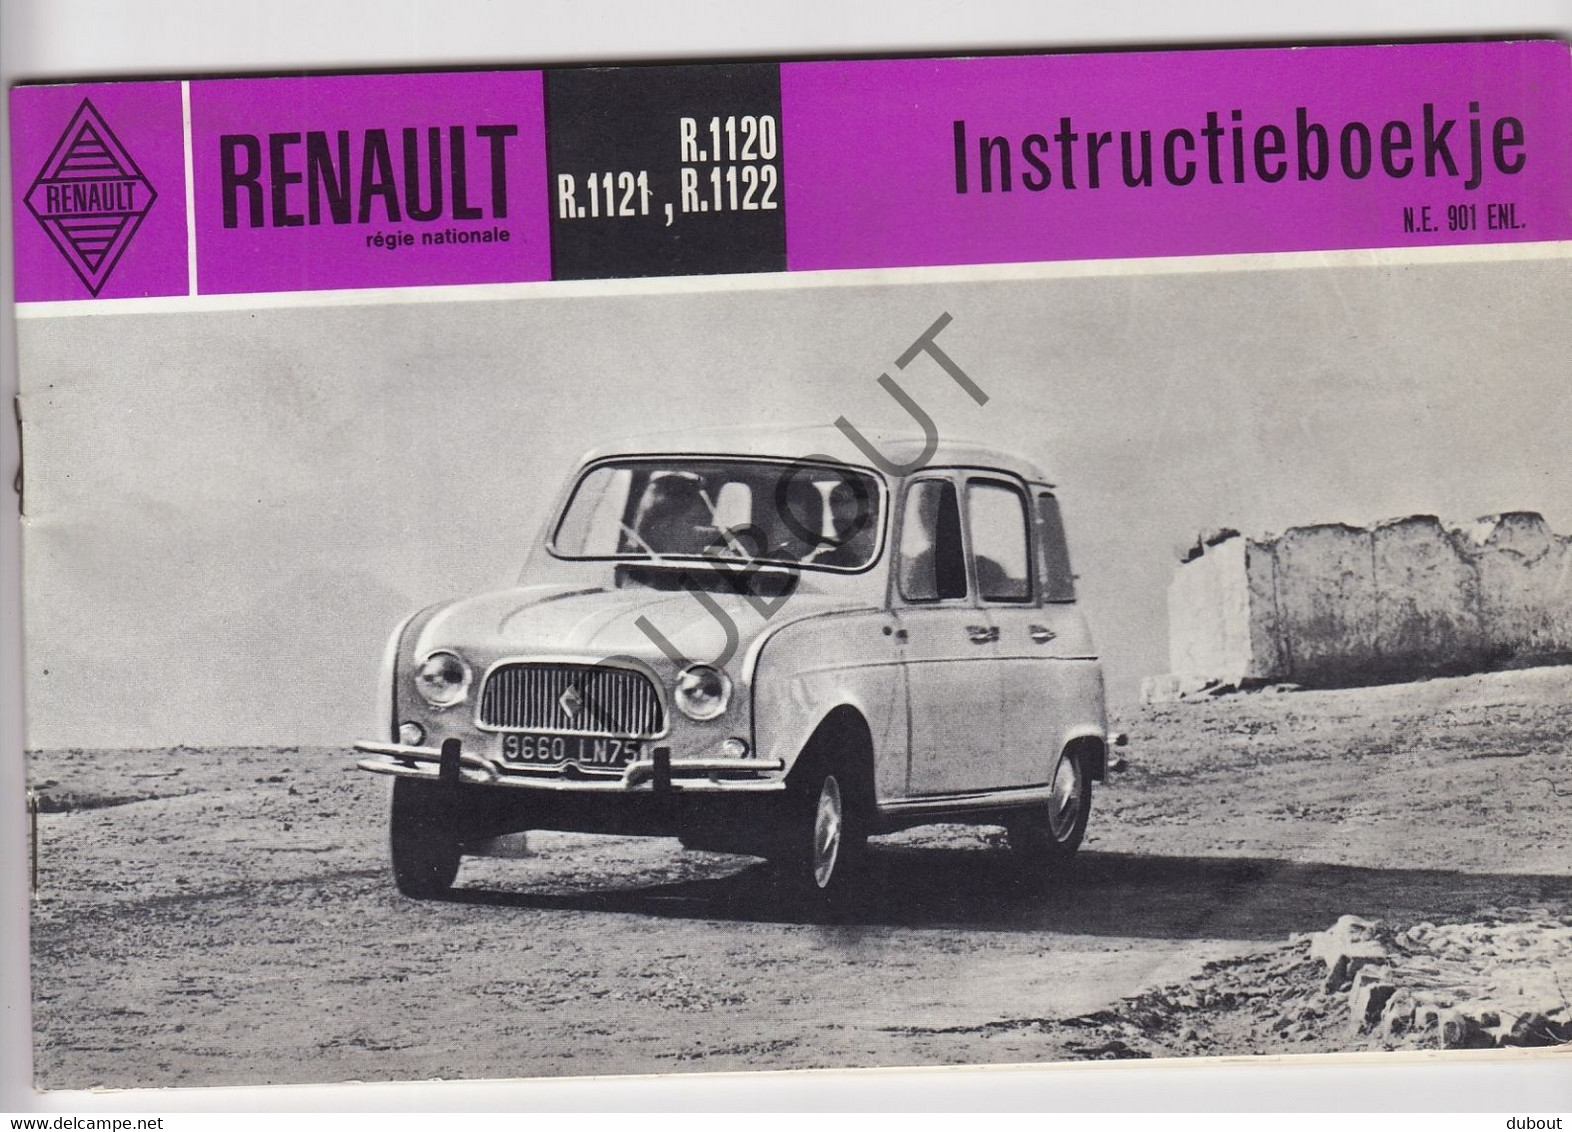 Renault - Reclameboekje/Instructieboekje Renault R1120/1122 - Jaren '60-'70   (V1203) - Sachbücher